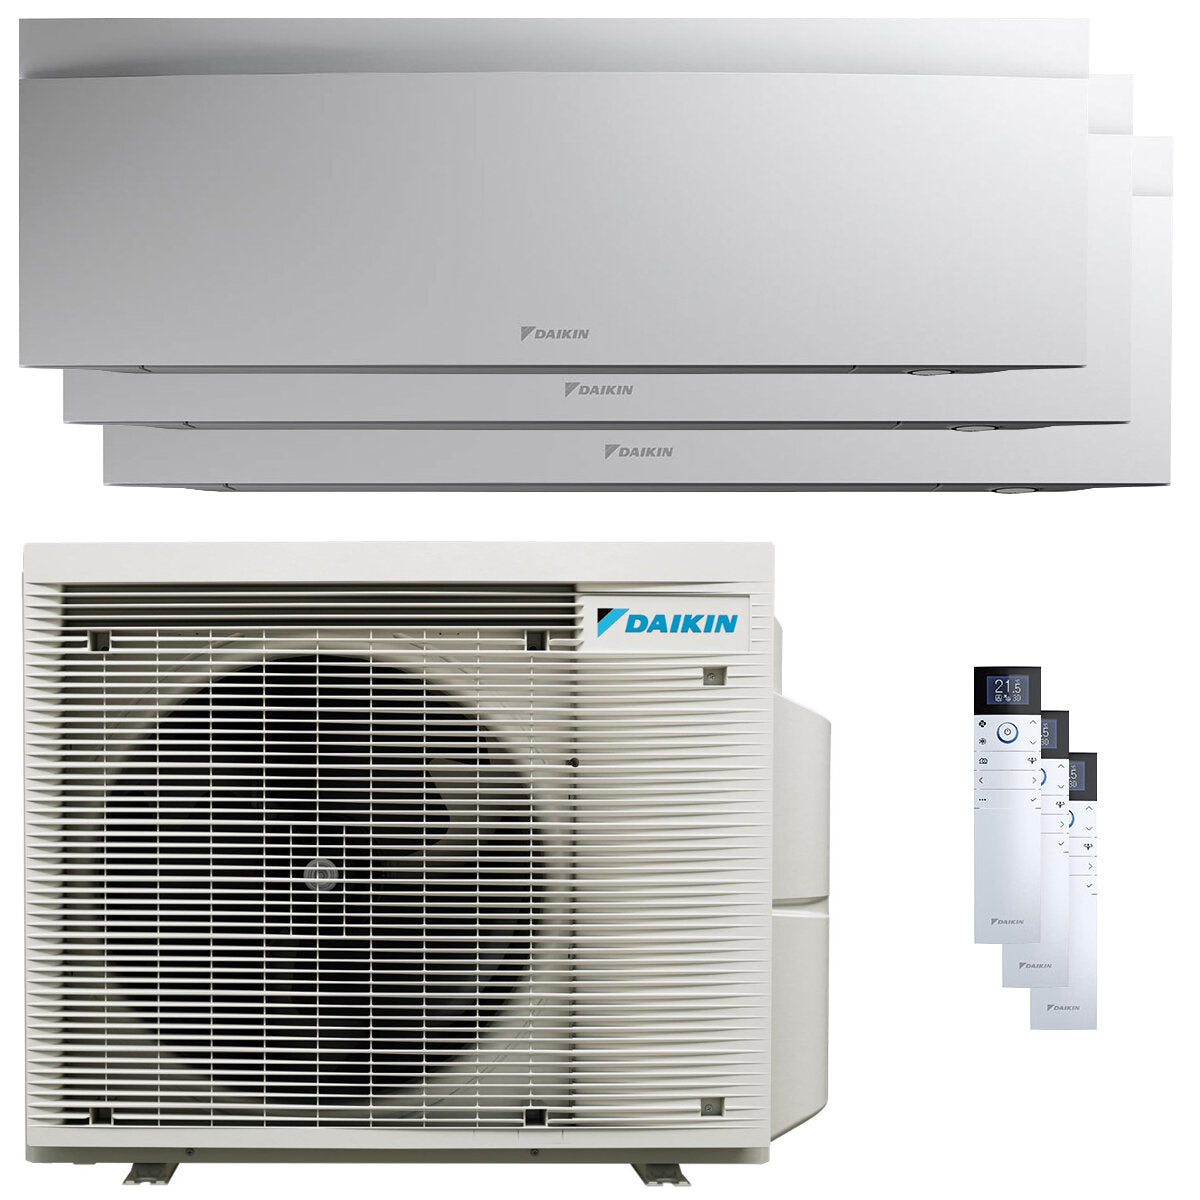 Daikin Emura 3 trial split air conditioner 9000+9000+15000 BTU inverter A+ wifi outdoor unit 6.8 kW White